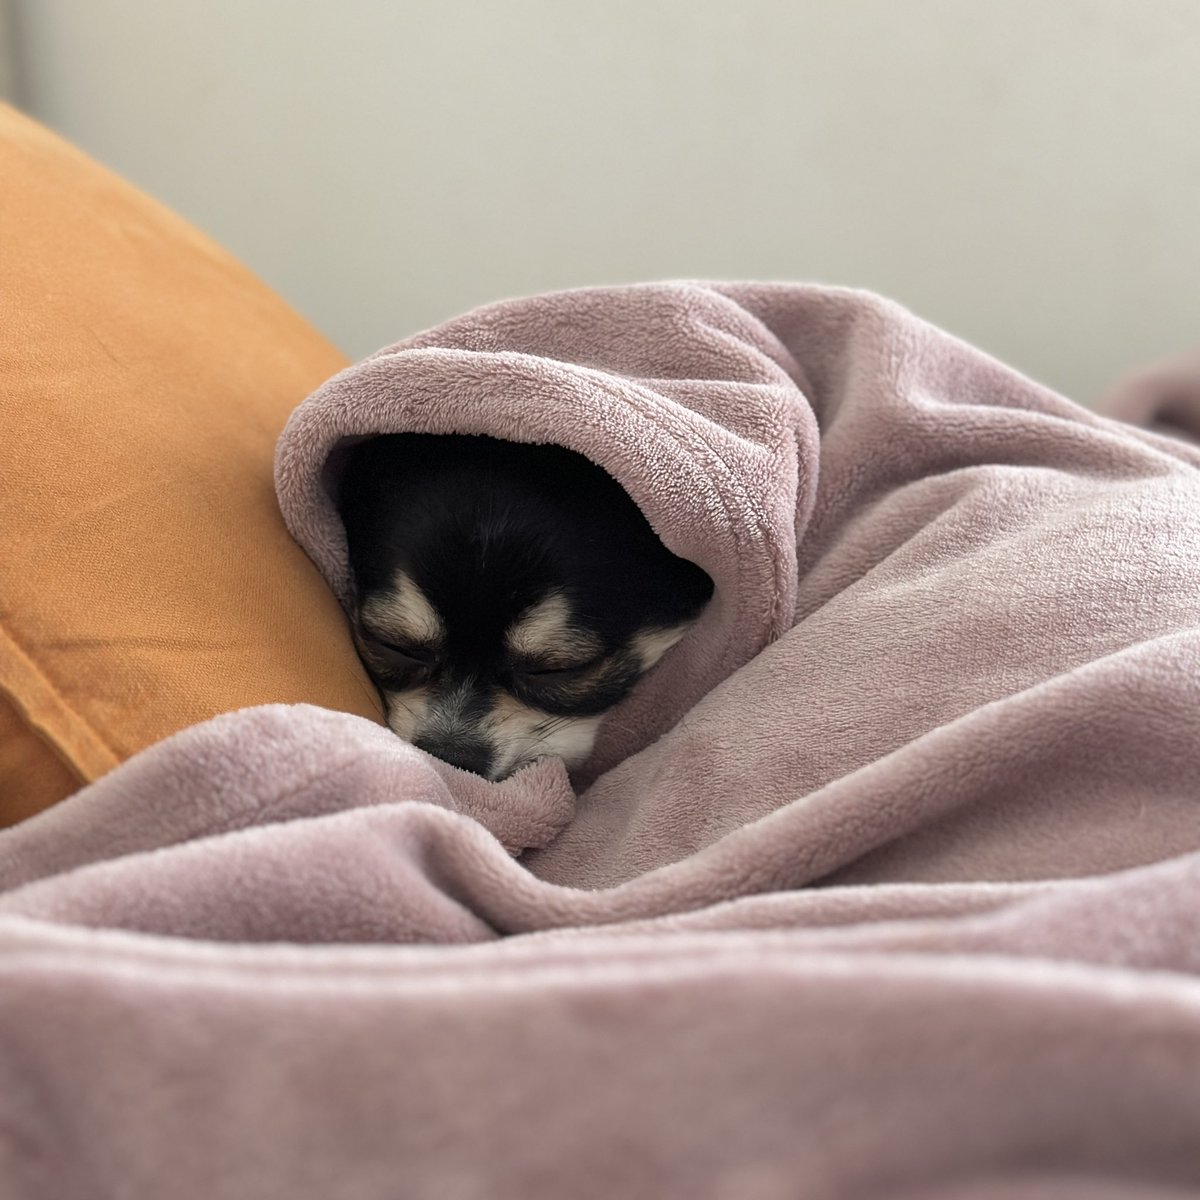 朝、ちょっと冷えるかなーと思って毛布掛けておいたら寝てた・・・。 #チワワ #犬のいる生活